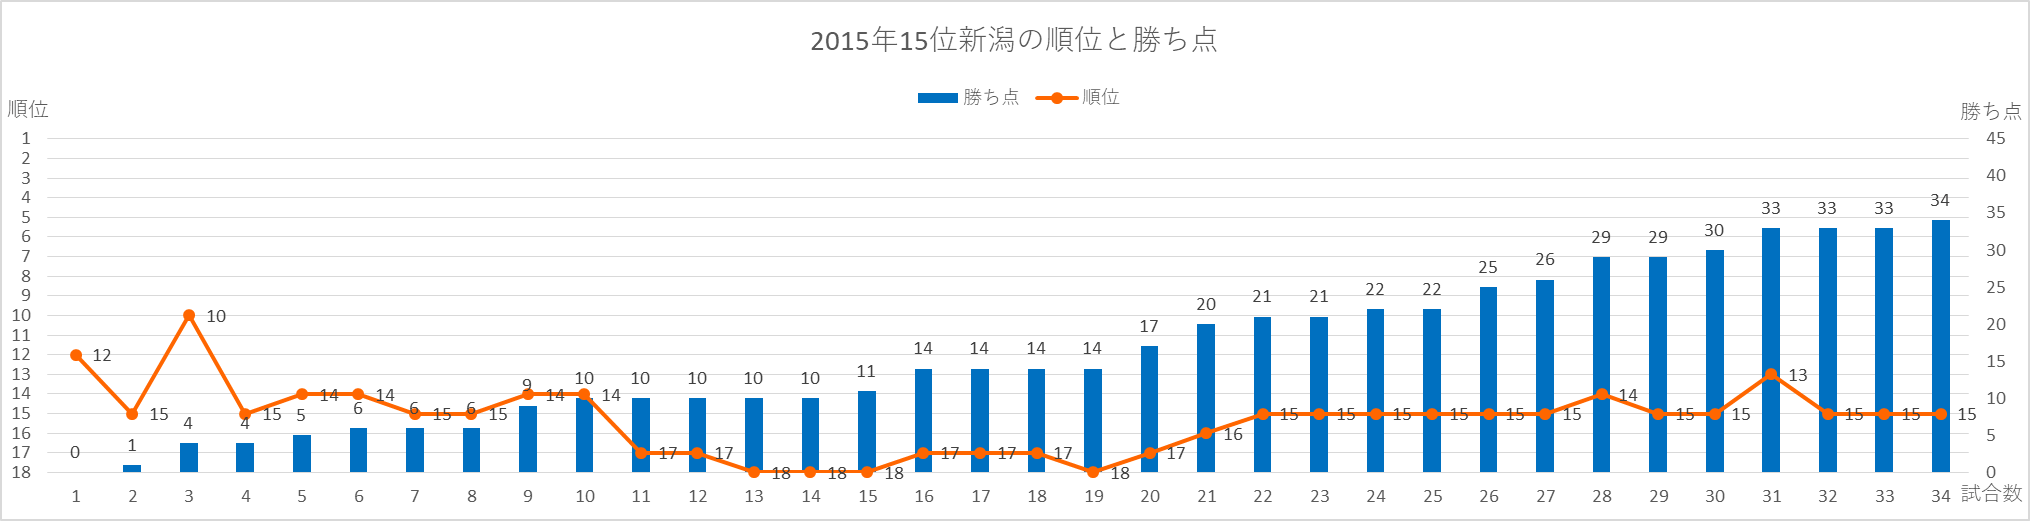 2015年新潟の順位と勝ち点の推移